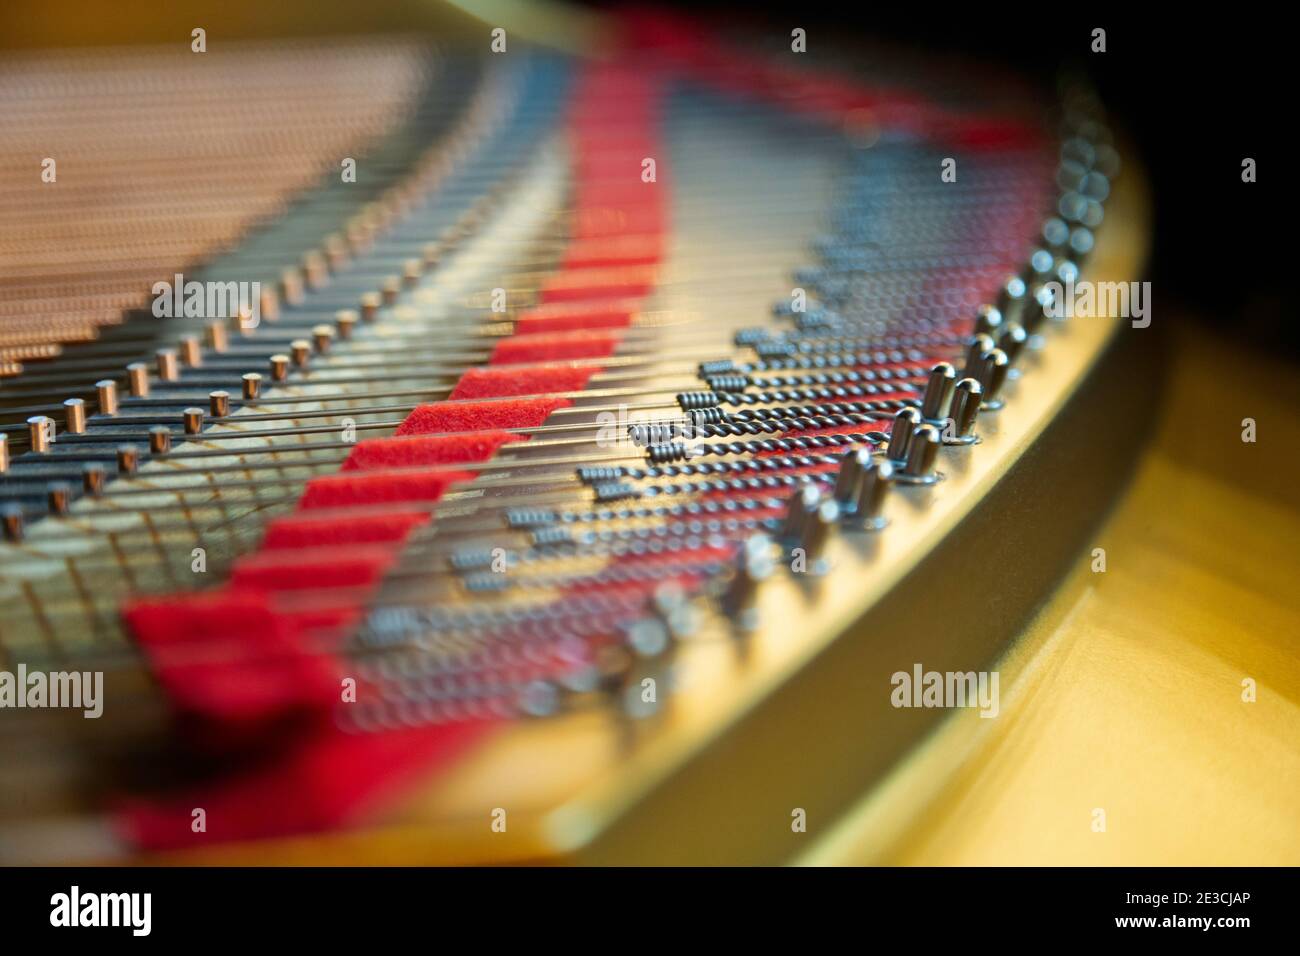 La parte colorata della tavola sonora di un pianoforte tedesco Steinway M. L'illuminazione è la luce solare attraverso una finestra vicina. Foto Stock